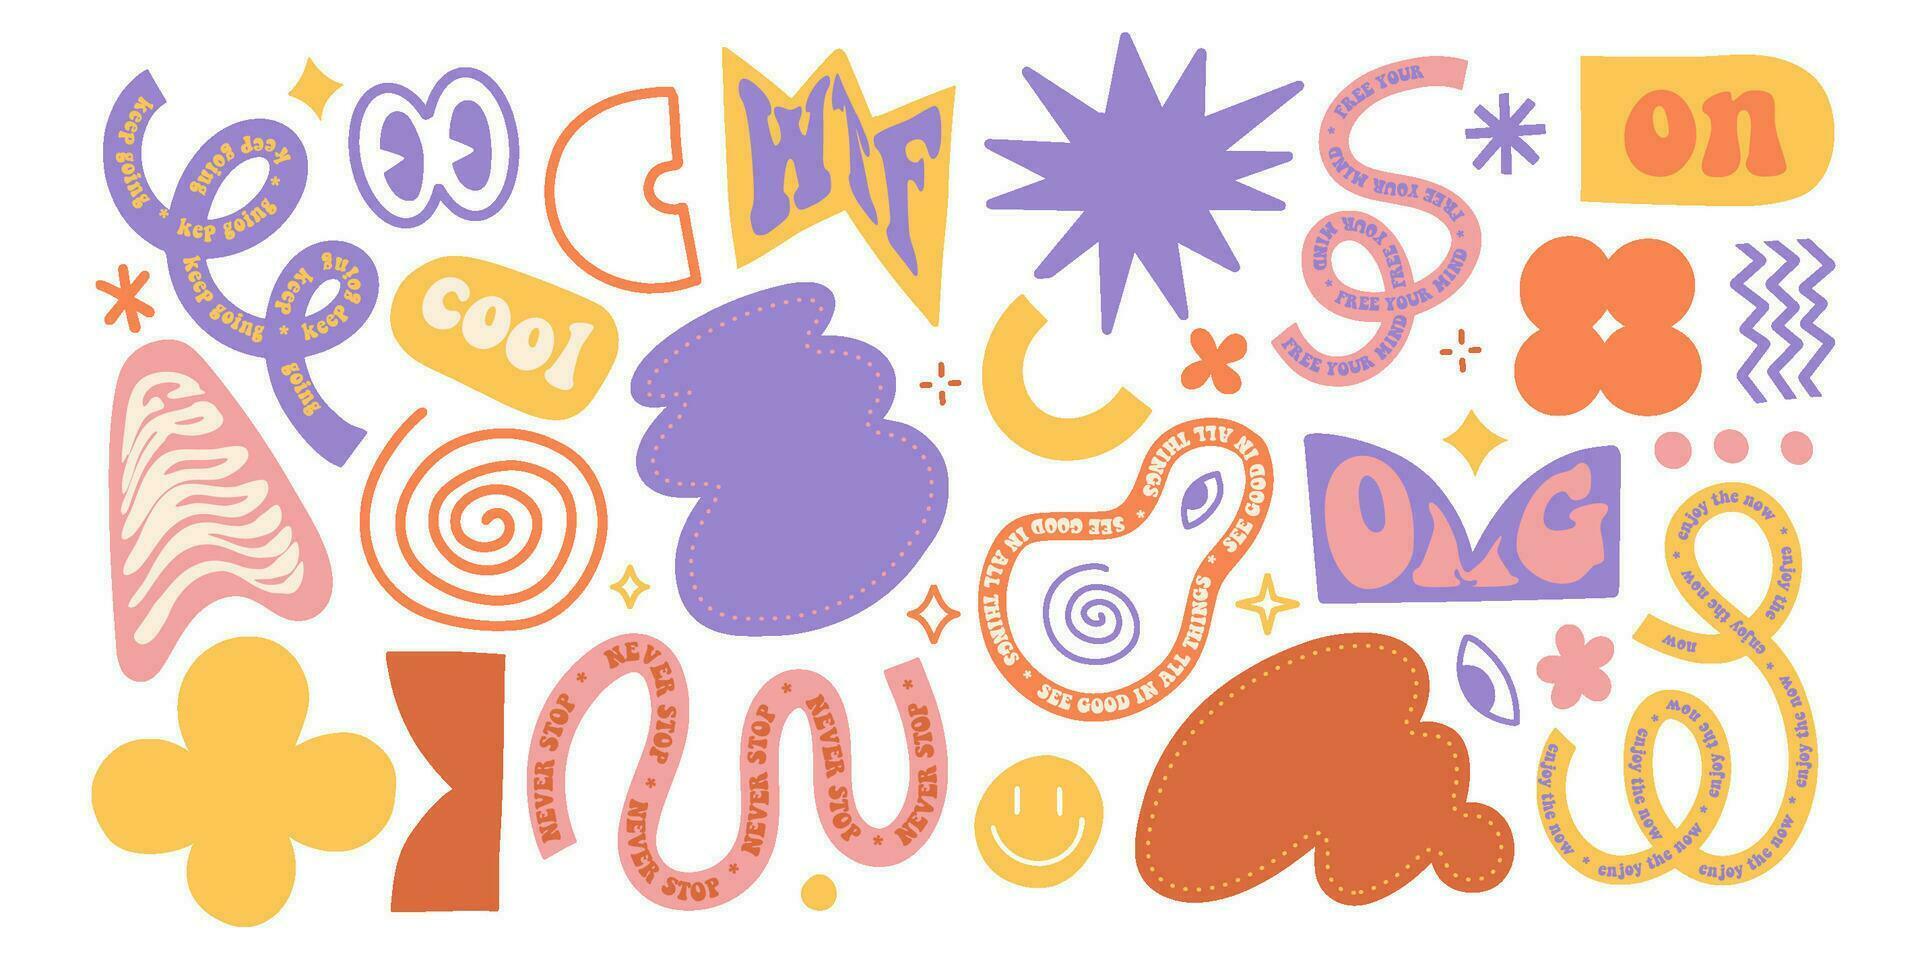 naief speels hand- getrokken abstract vormen stickers set. jaren 80-90 groovy meetkundig vormen met typografie in modieus retro stijl. vector vlak illustratie met golvend elementen. brutalisme esthetisch verzameling